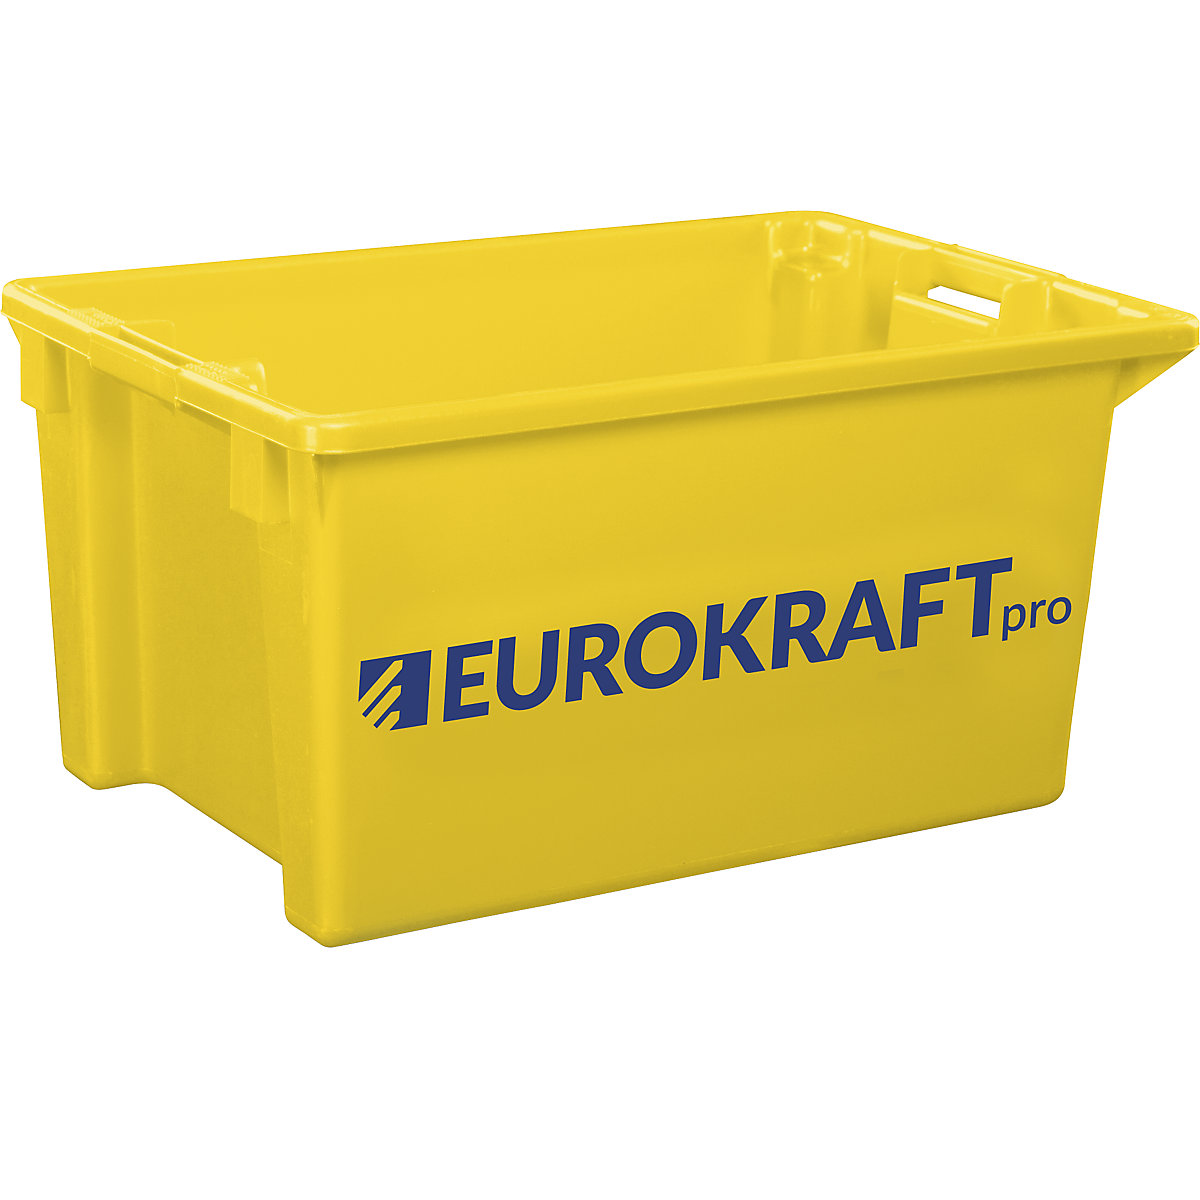 EUROKRAFTpro – Spremnik za slaganje od polipropilena pogodnog za kontakt s prehrambenim proizvodima, volumen 70 l, pak. 2 kom., zatvorene stijenke i dno, u žutoj boji